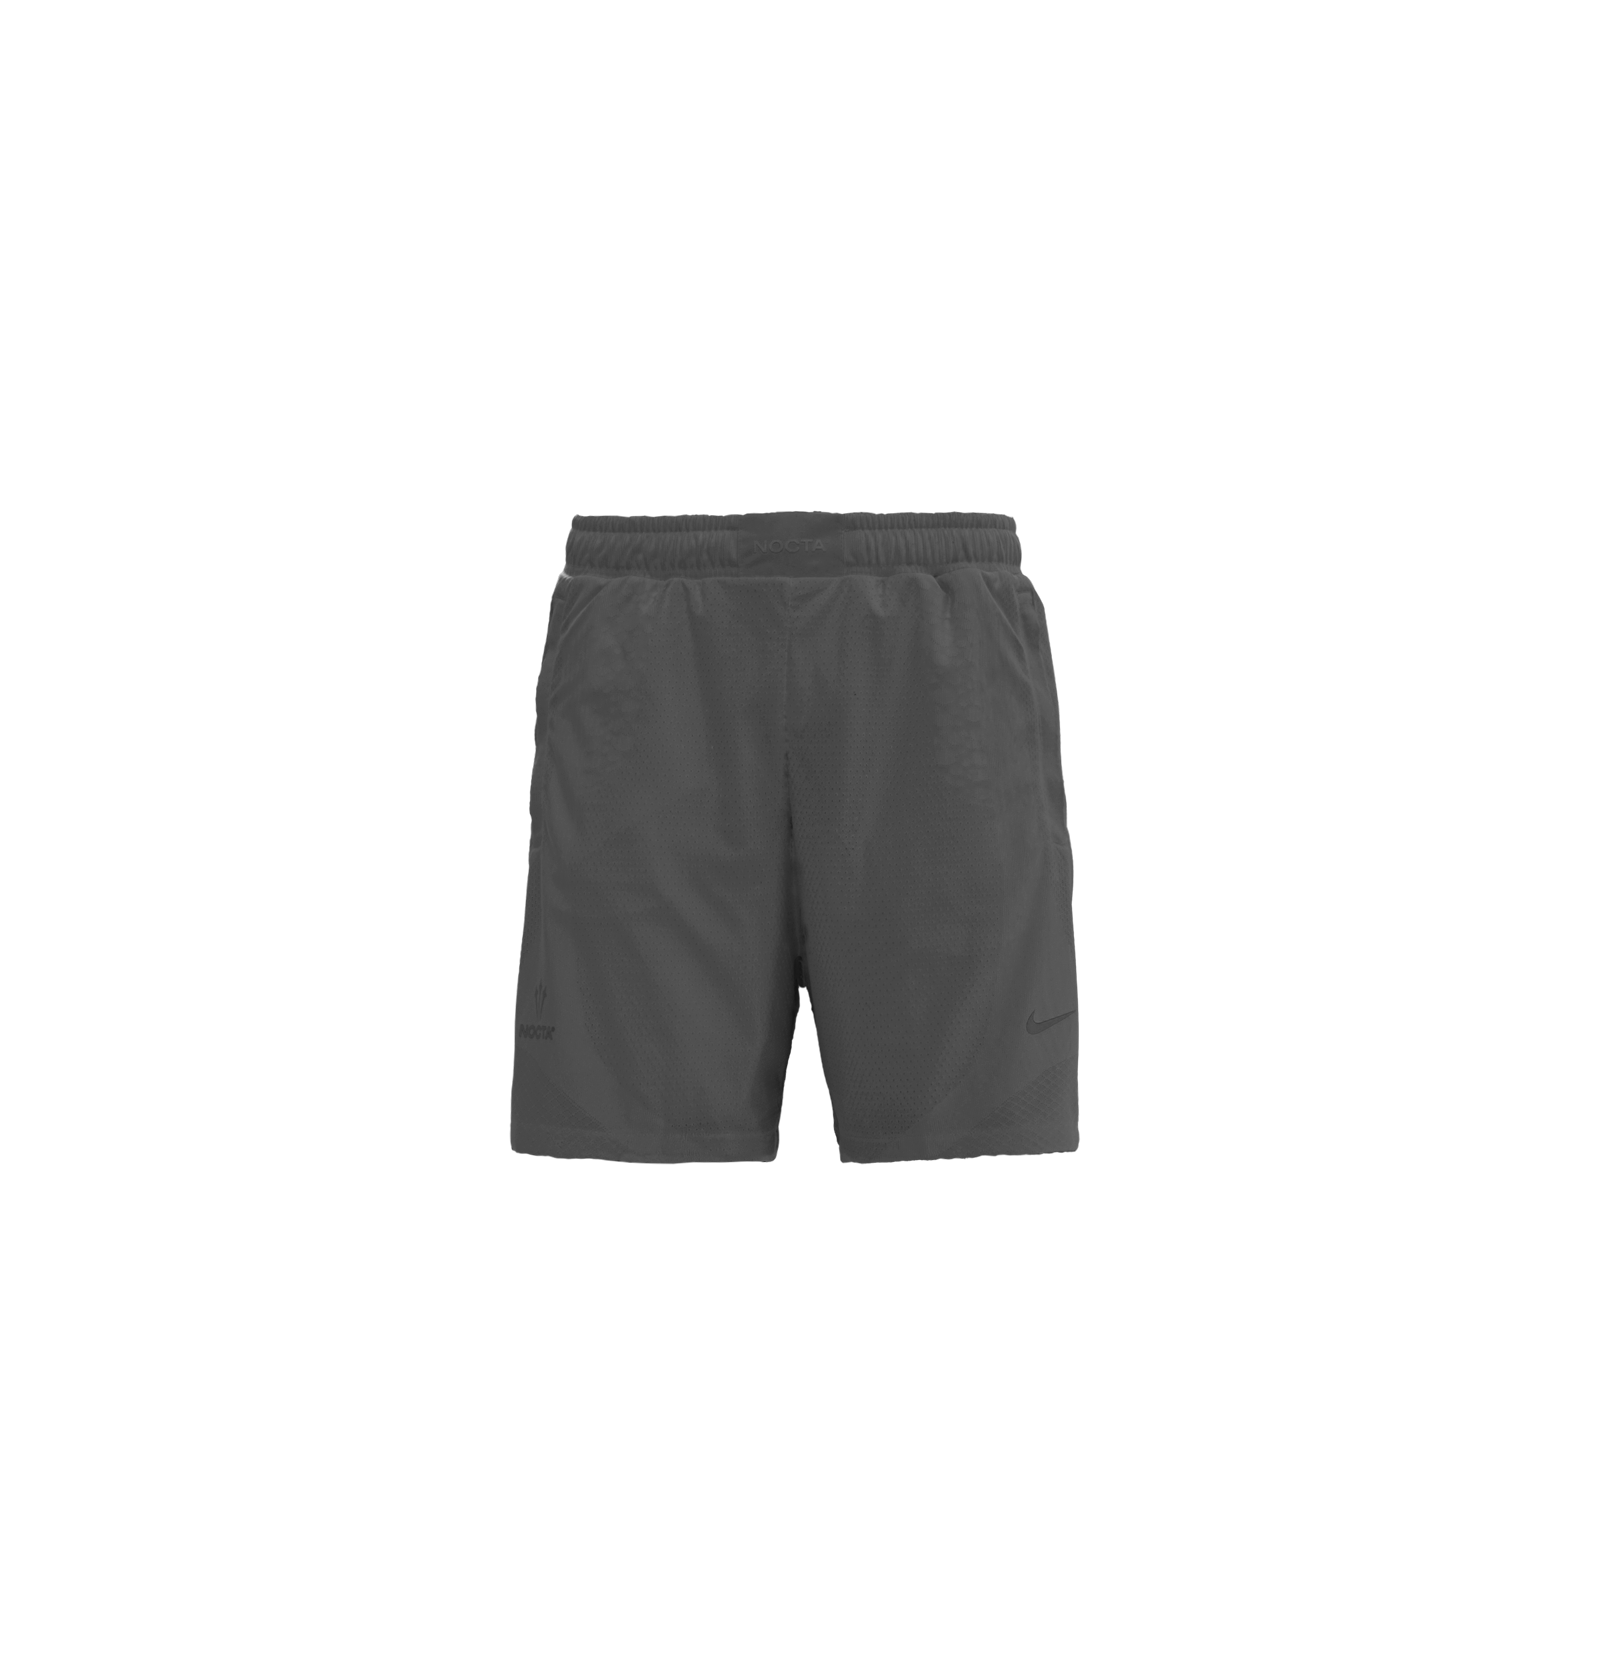 NOCTA Shorts - Black/White – Feature